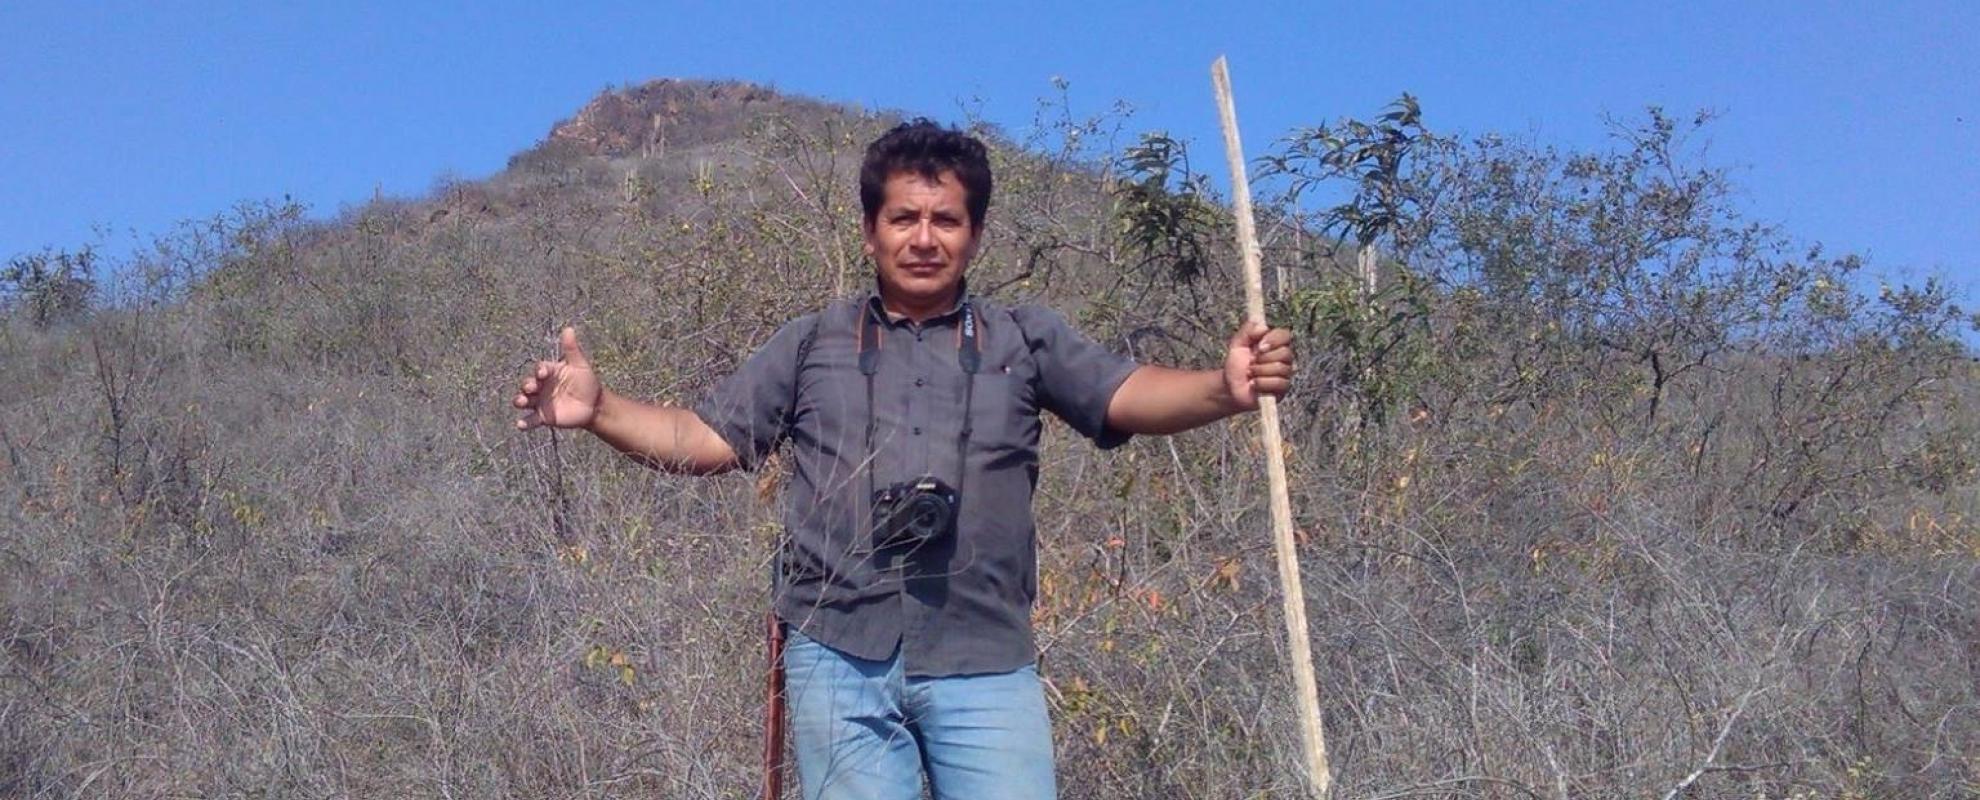 Edivar Juan Carrasco Vasquez in het Chaparrí reservaat